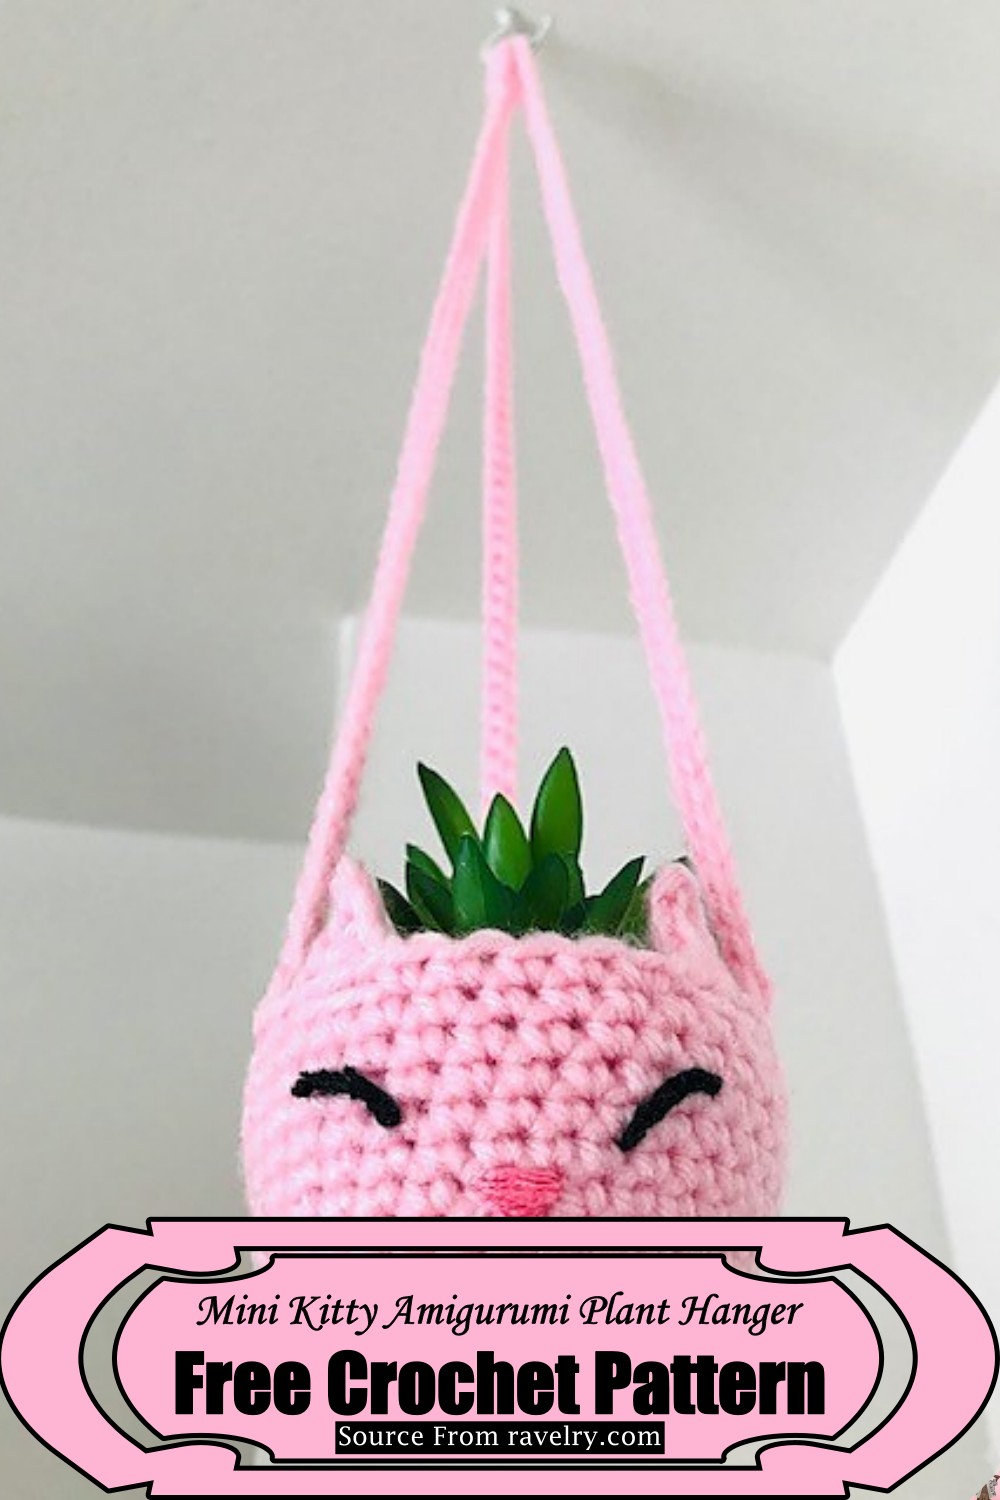 Mini Kitty Amigurumi Plant Hanger